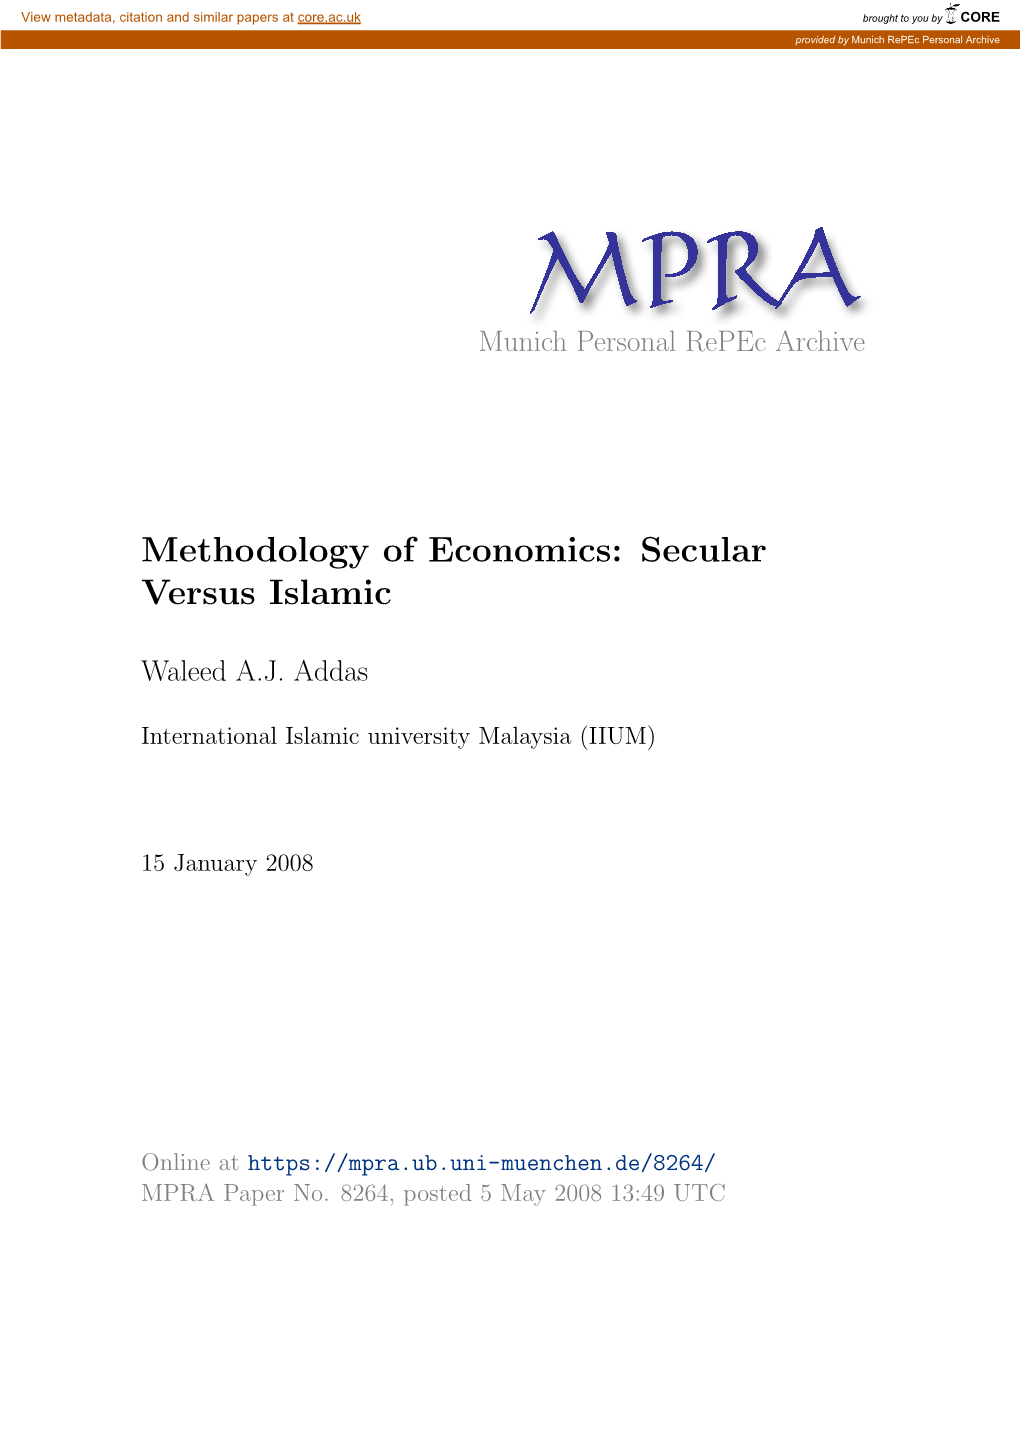 Methodology of Economics: Secular Versus Islamic